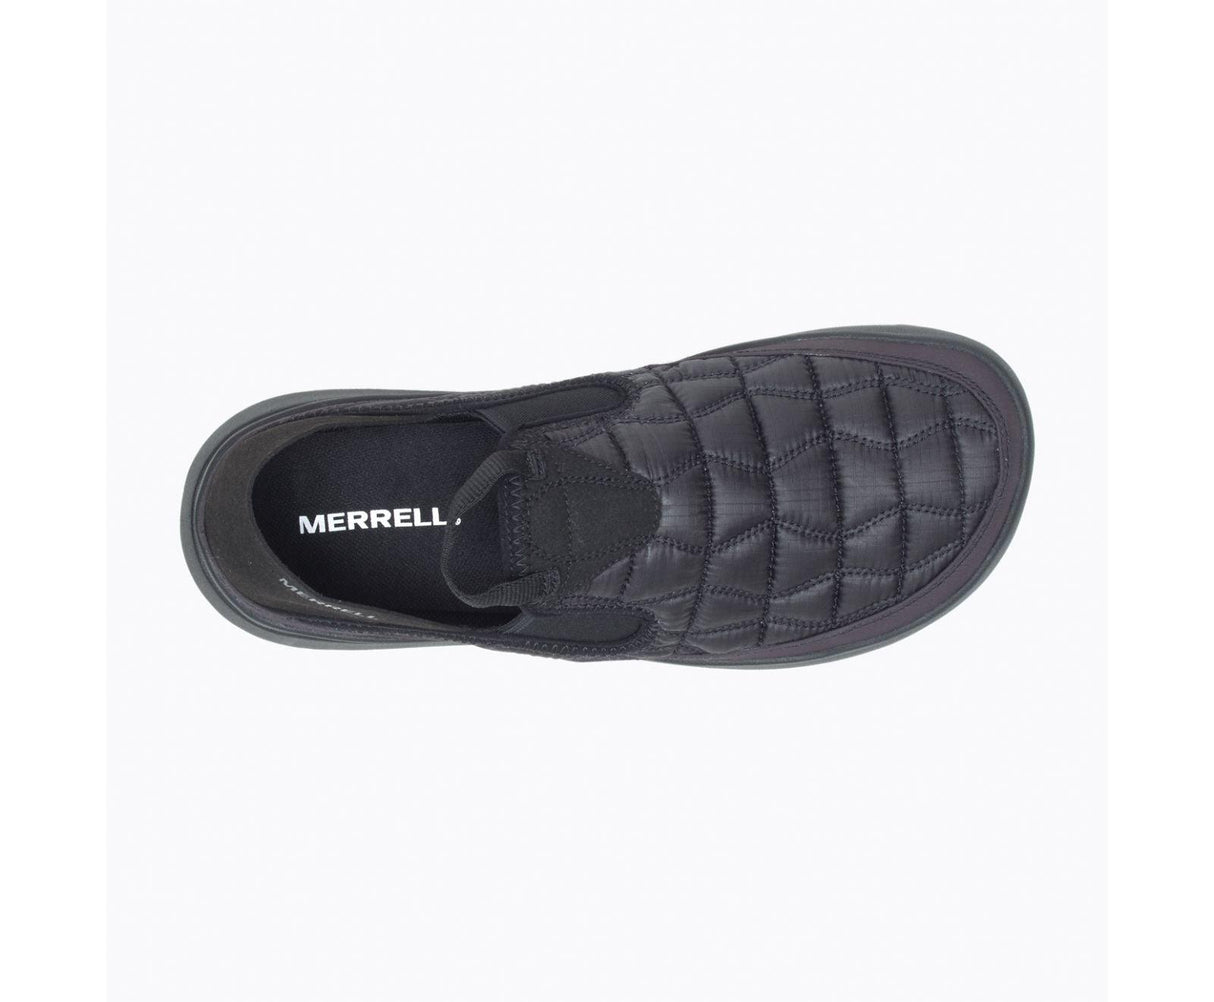 Merrell Men's Hut Moc 2 - A&M Clothing & Shoes